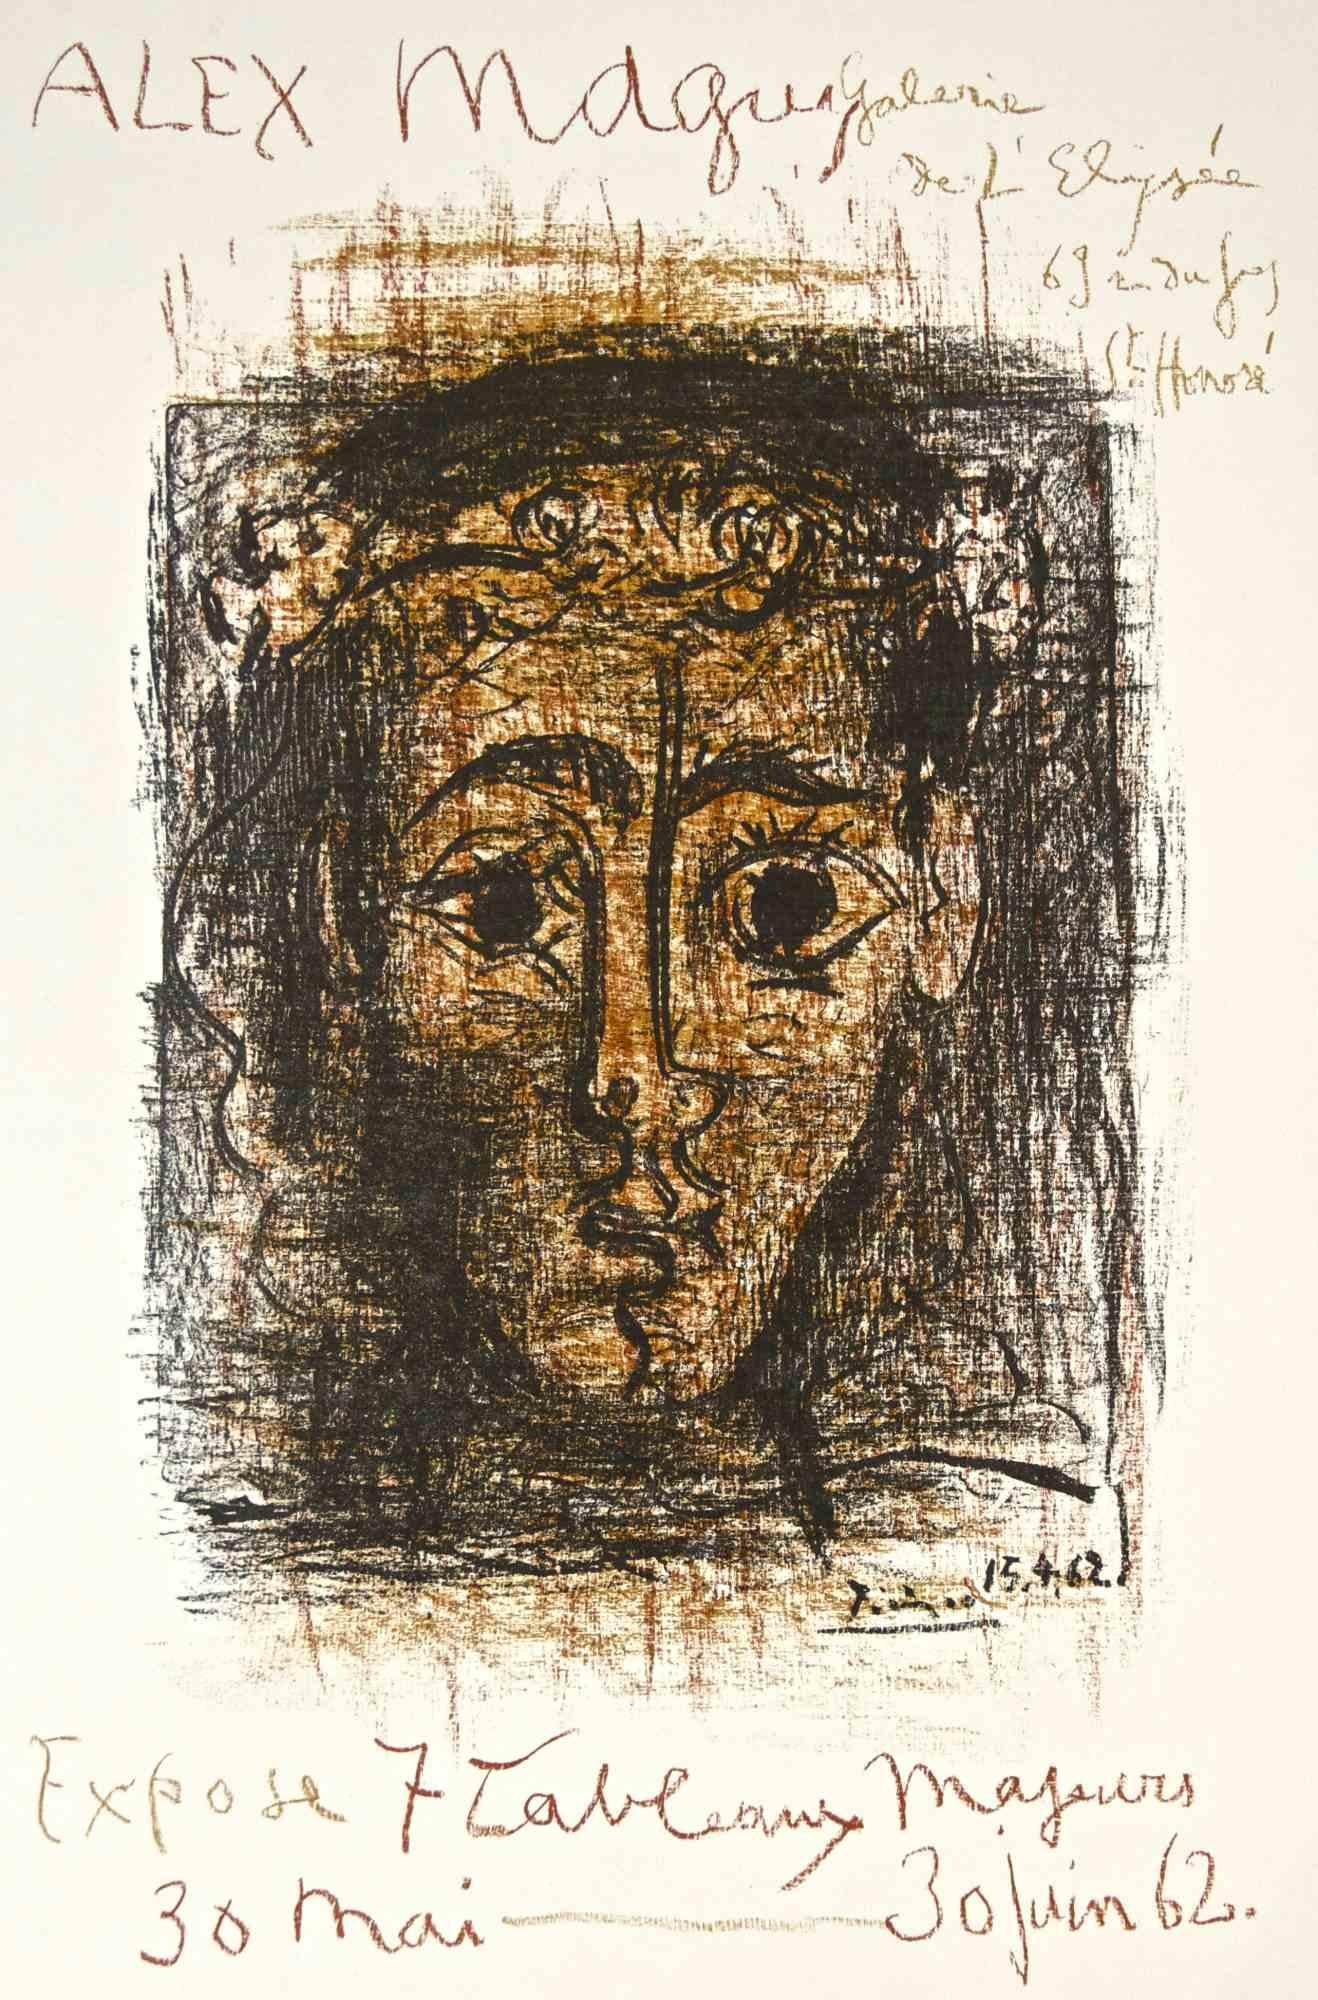 Affiche de Pablo Picasso pour l'exposition Alex Maguy à la Galerie de l'Elysée de mai à juin 1962. Signé et daté dans la plaque.

Lithographie en couleurs, tirée à 1 000 exemplaires.

Ref : Bloch 1298 ; Czwiklitzer 50 ; Rodrigo 123.  

Excellent